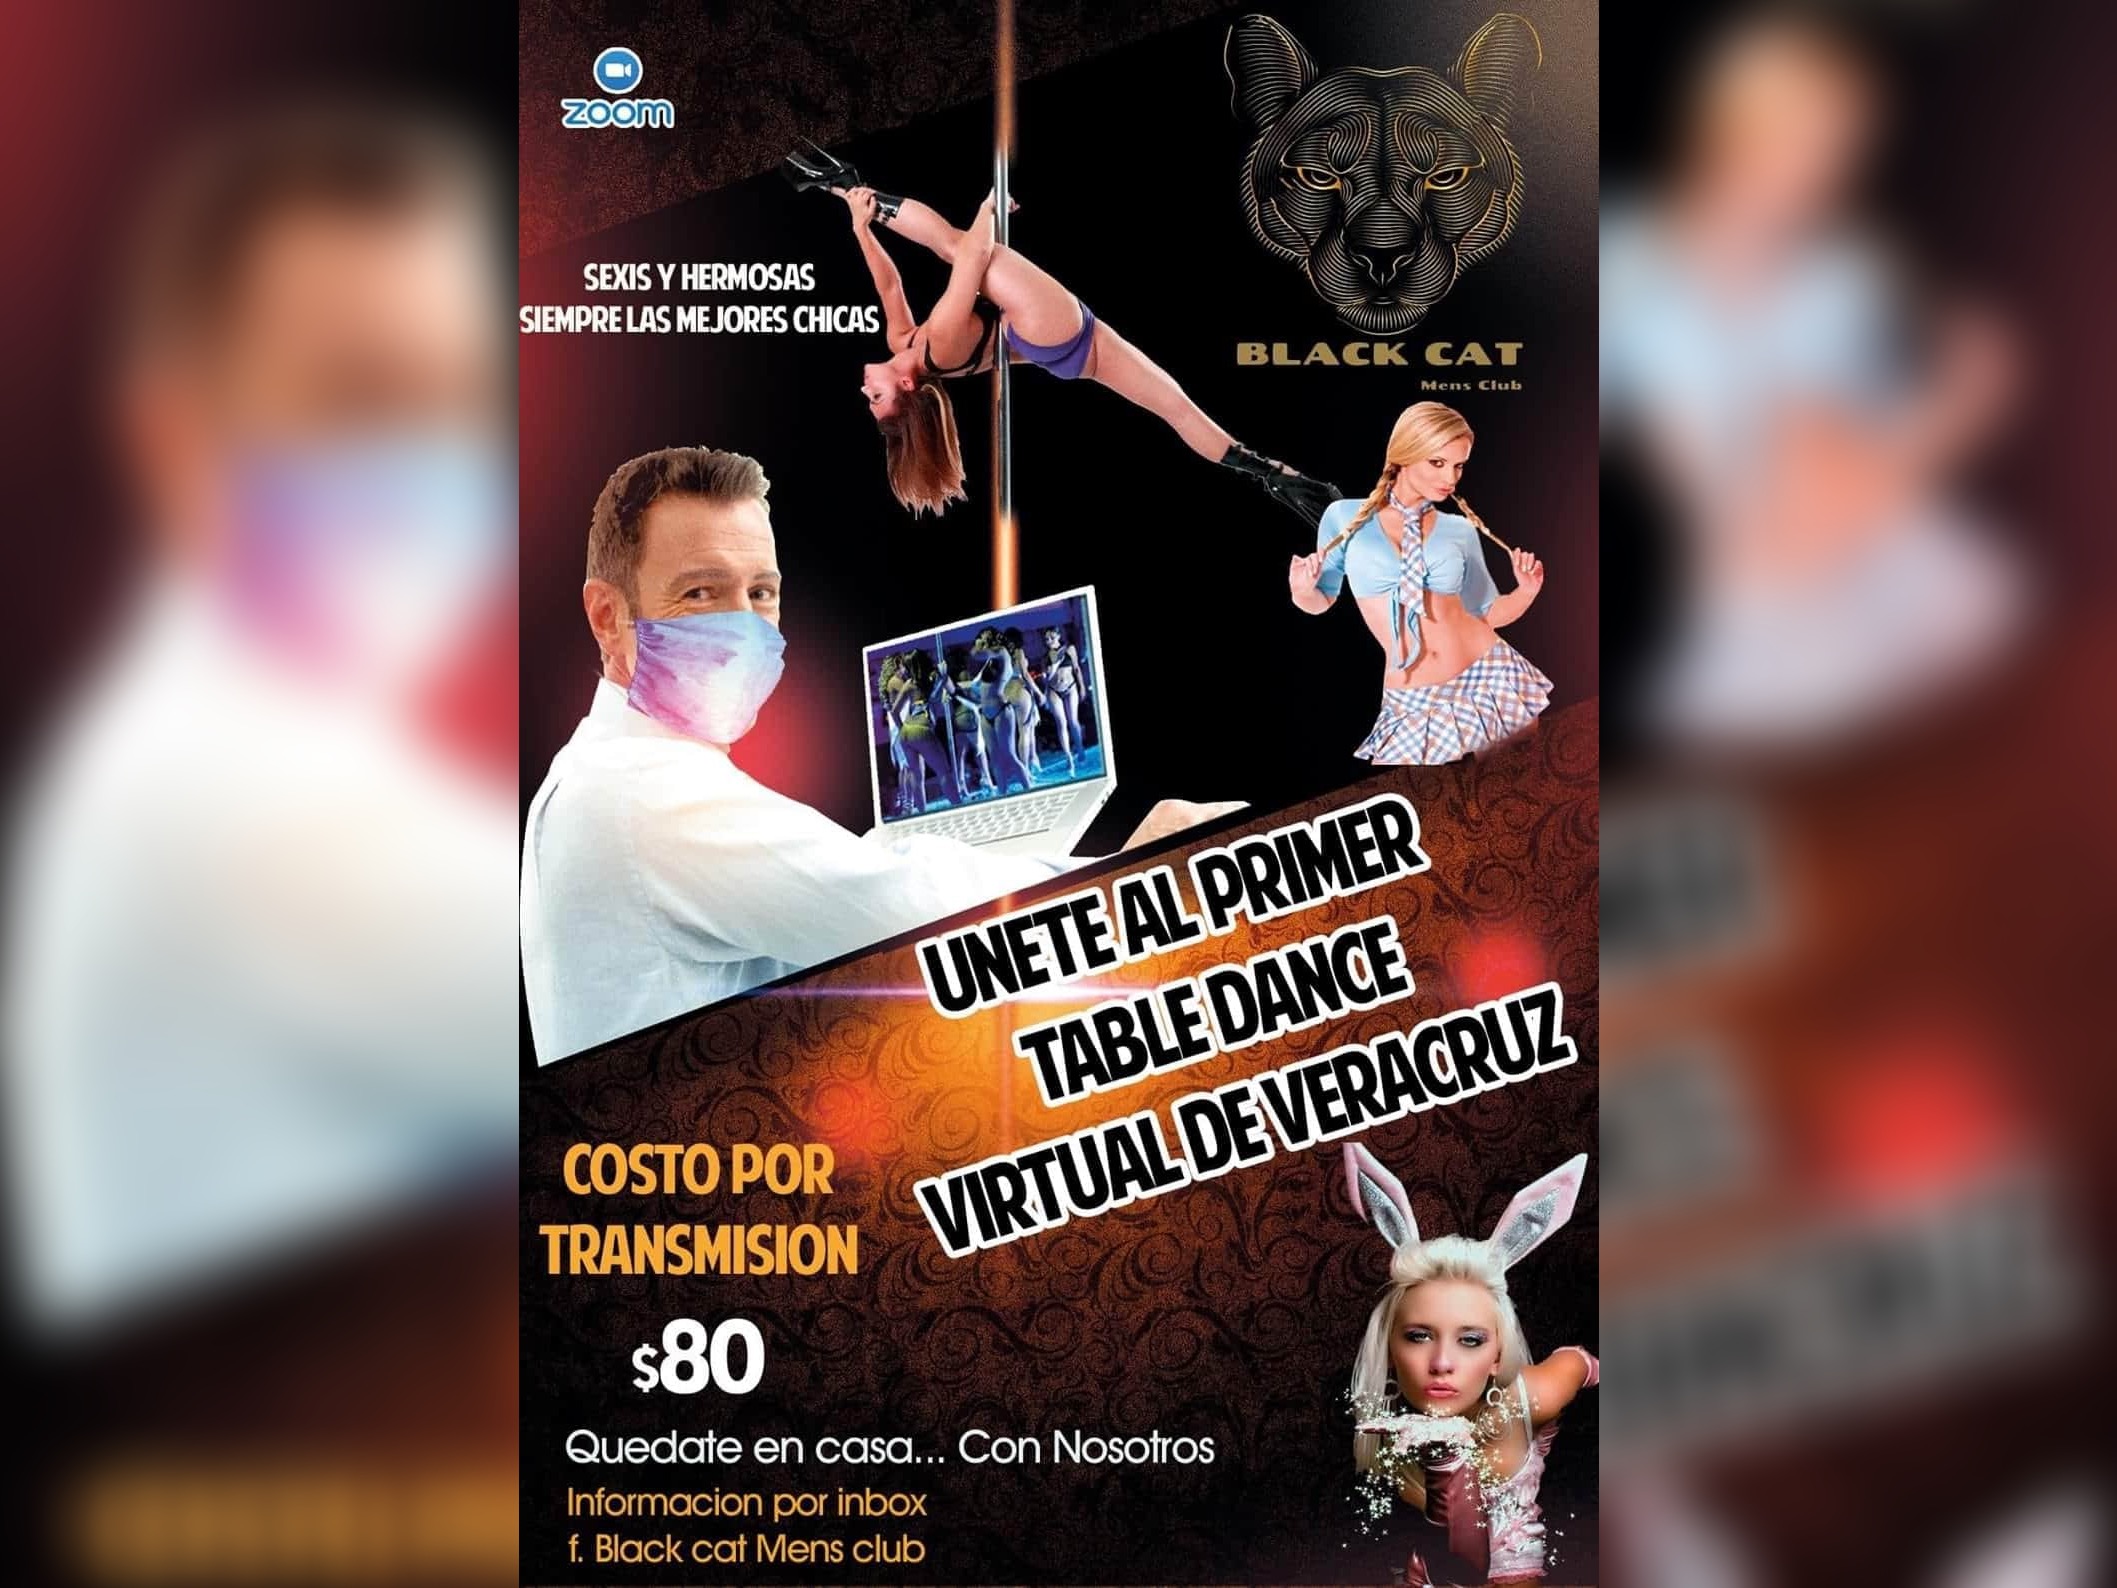 En tiempos de pandemia y abstinencia Table Dance xalapeño ofrece sus  servicios por Zoom - Crónica de Xalapa